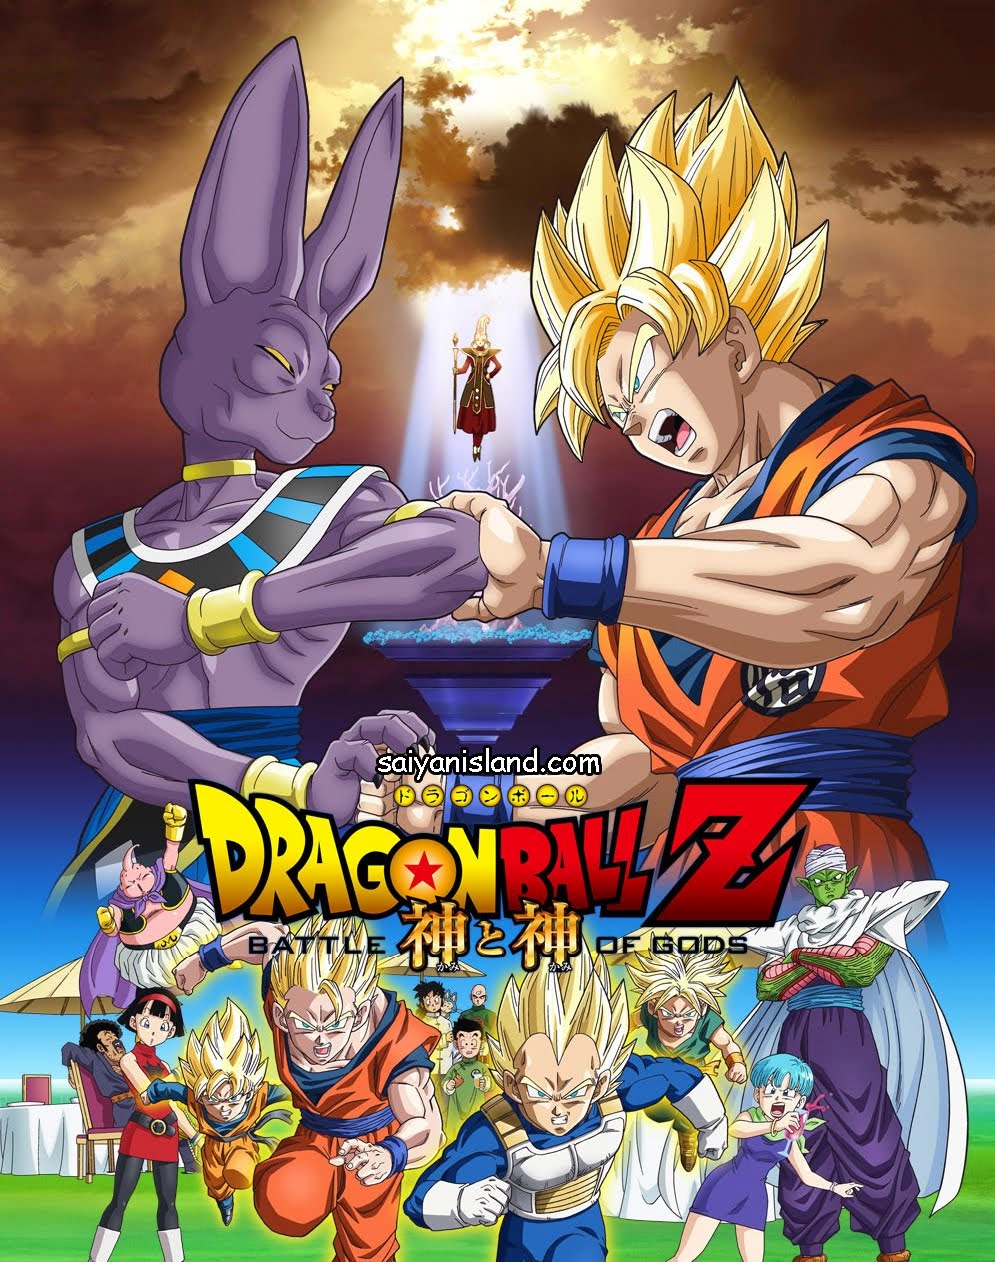 Dragon Ball Z: A Batalha dos Deuses será dublado em português.